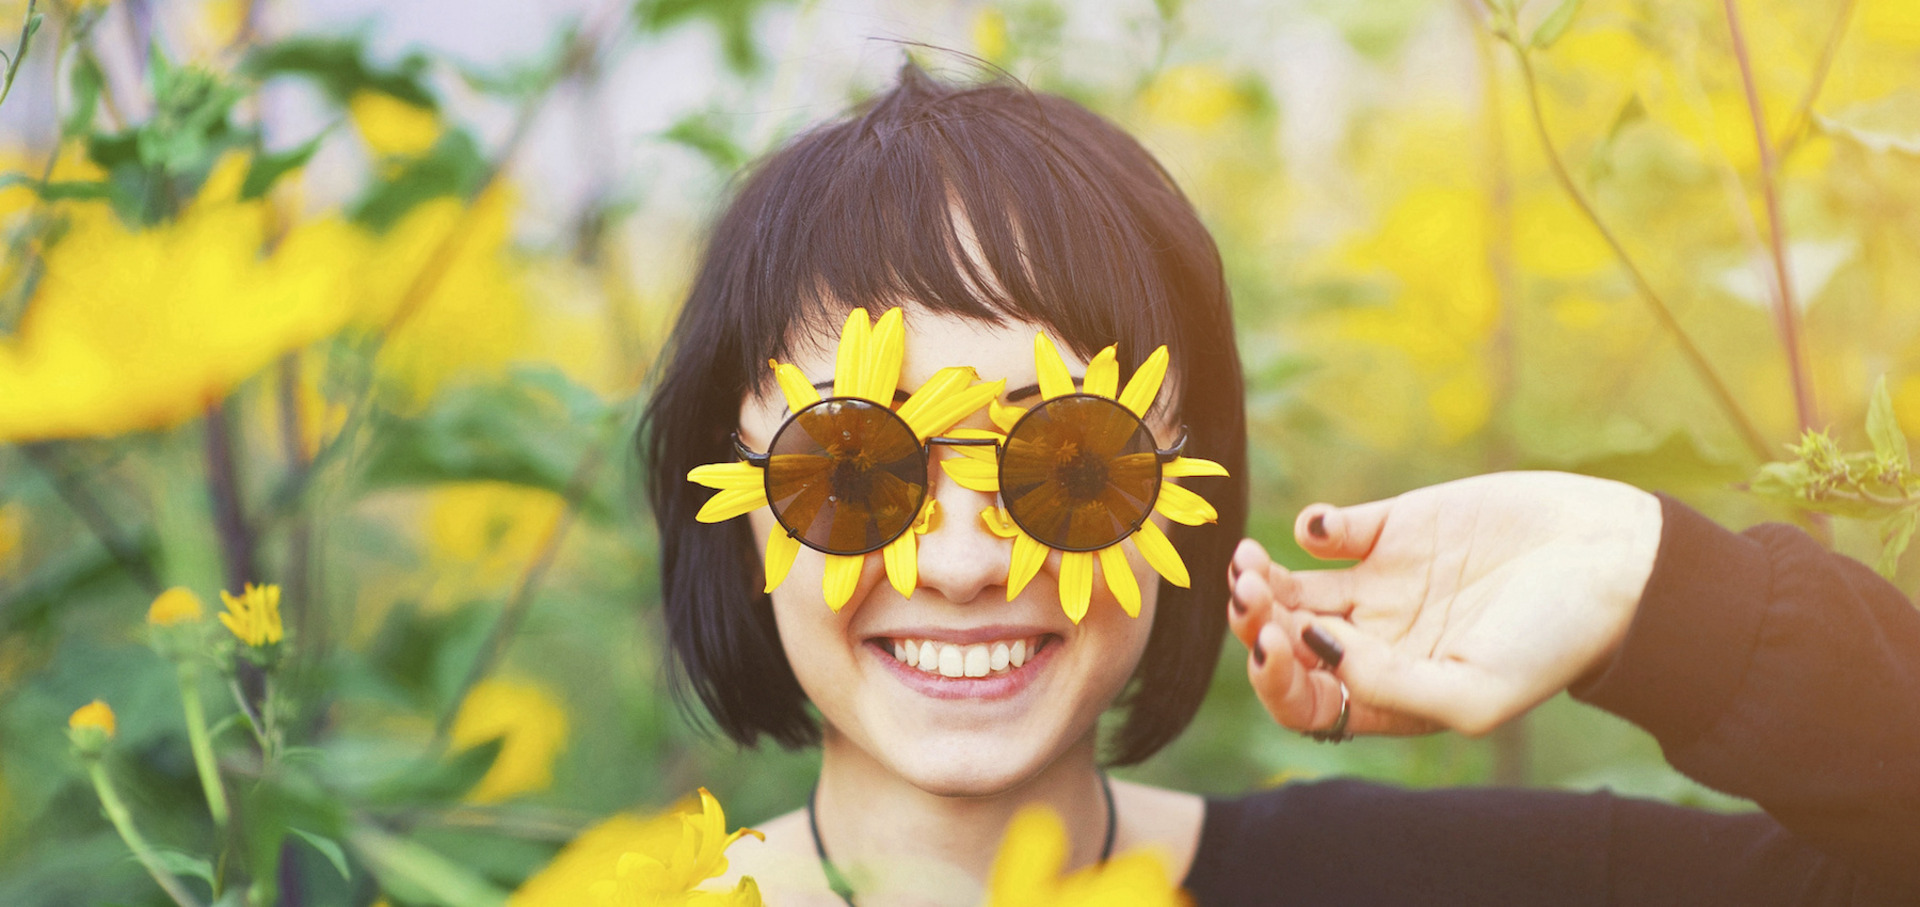 Eine Frau steht in einem Feld gelber Blumen, auch unter ihrer Sonnenbrille befinden sich zwei gelbe Blüten; sie lächelt uns an.